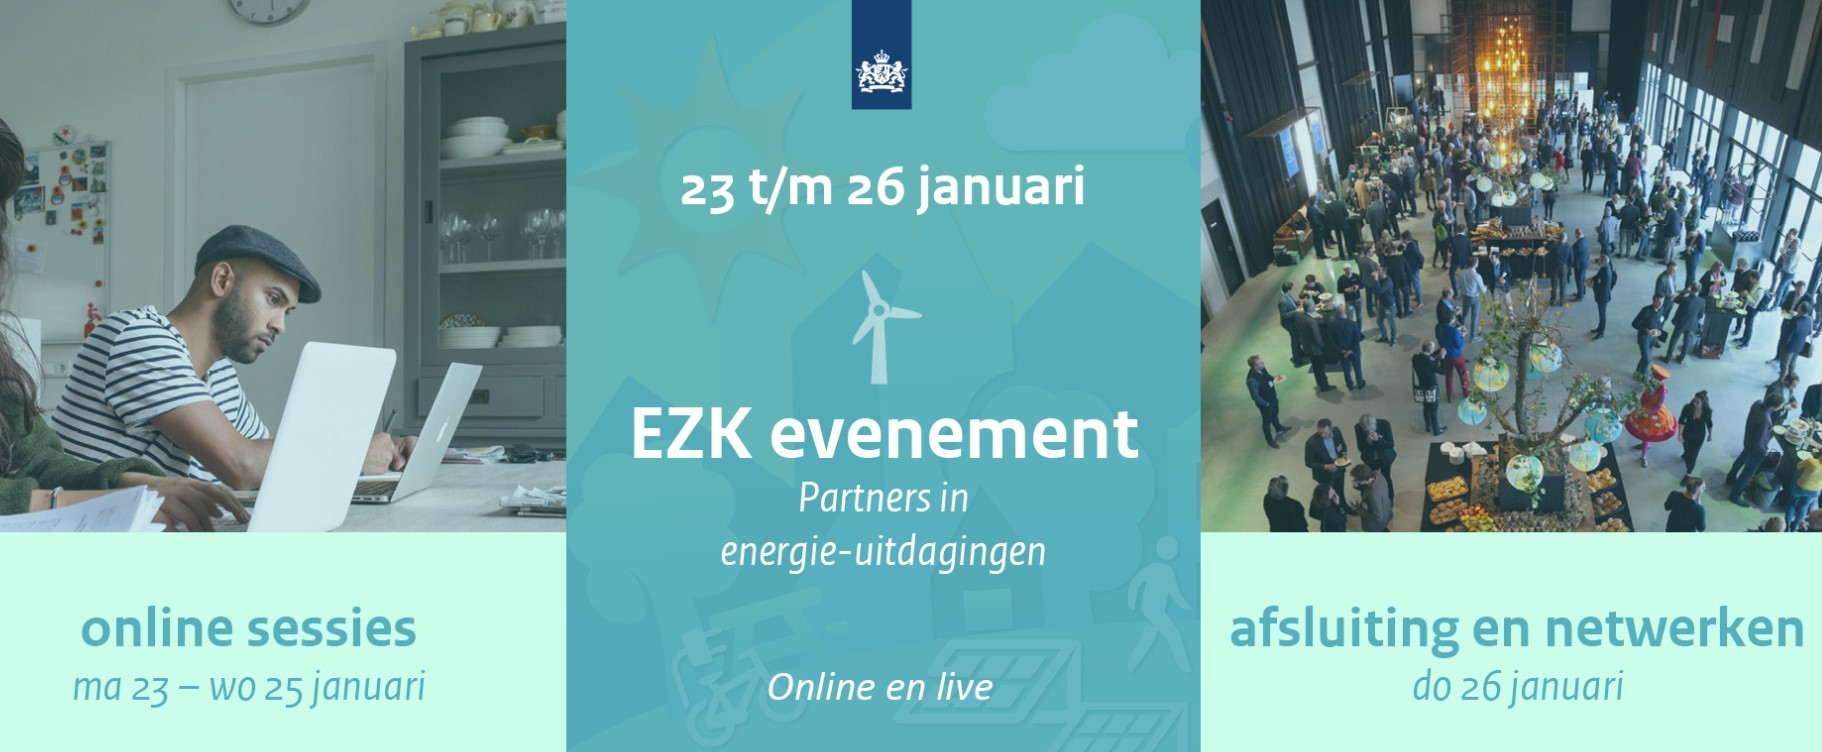 EZK-event 'Partners in energie-uitdagingen'